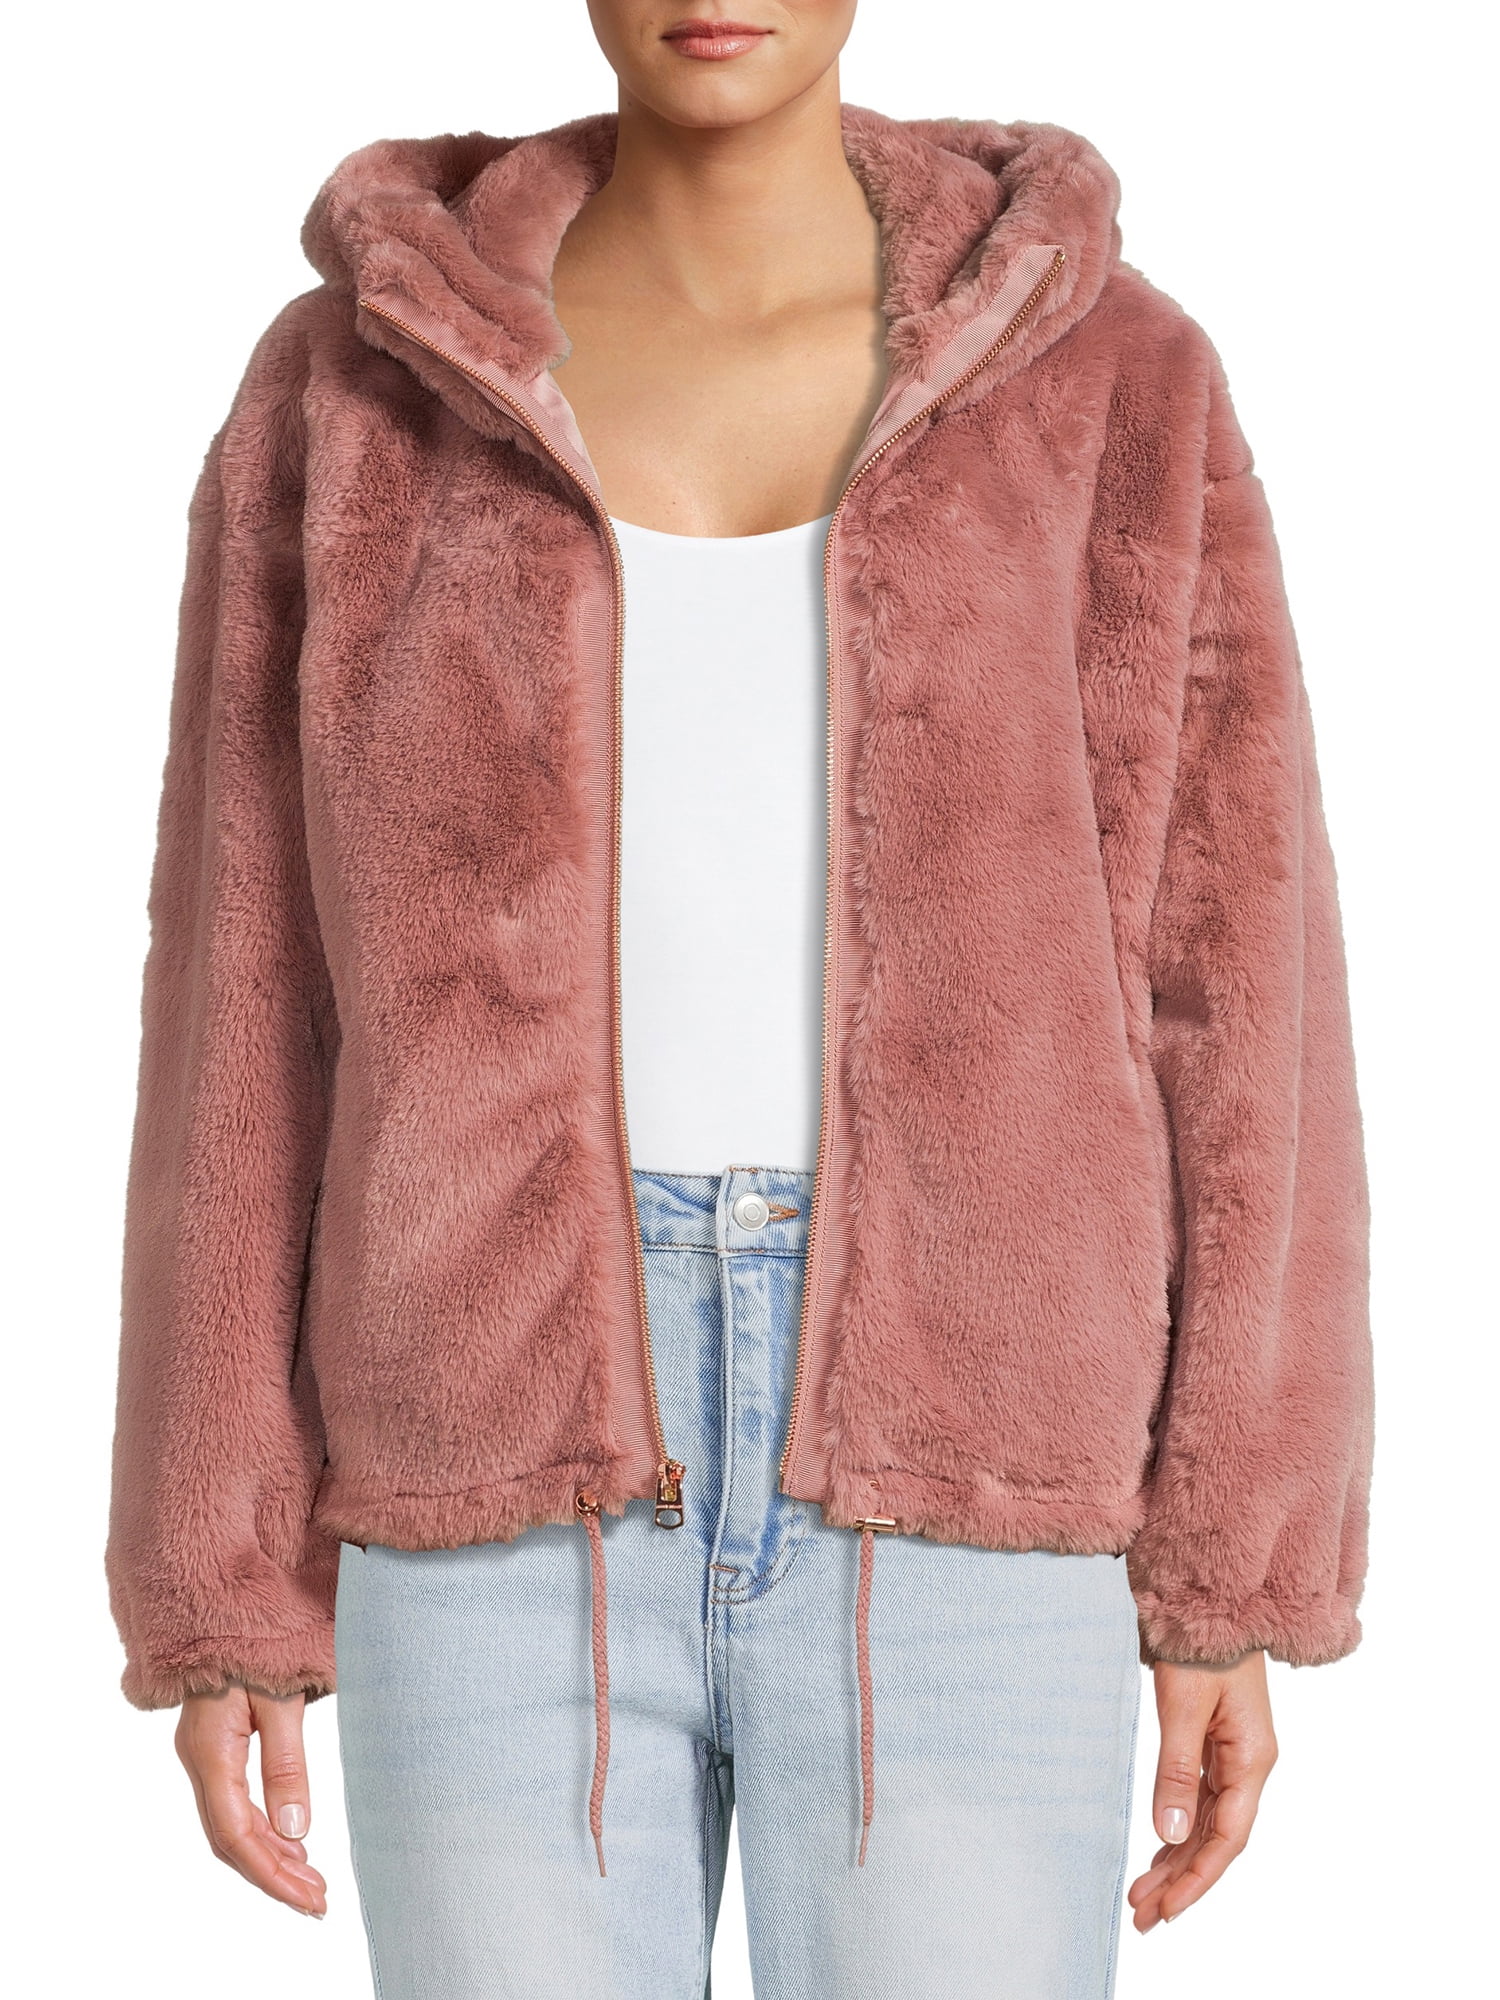 Lucky Brand Women's Faux Fur Hooded Jacket - Walmart.com